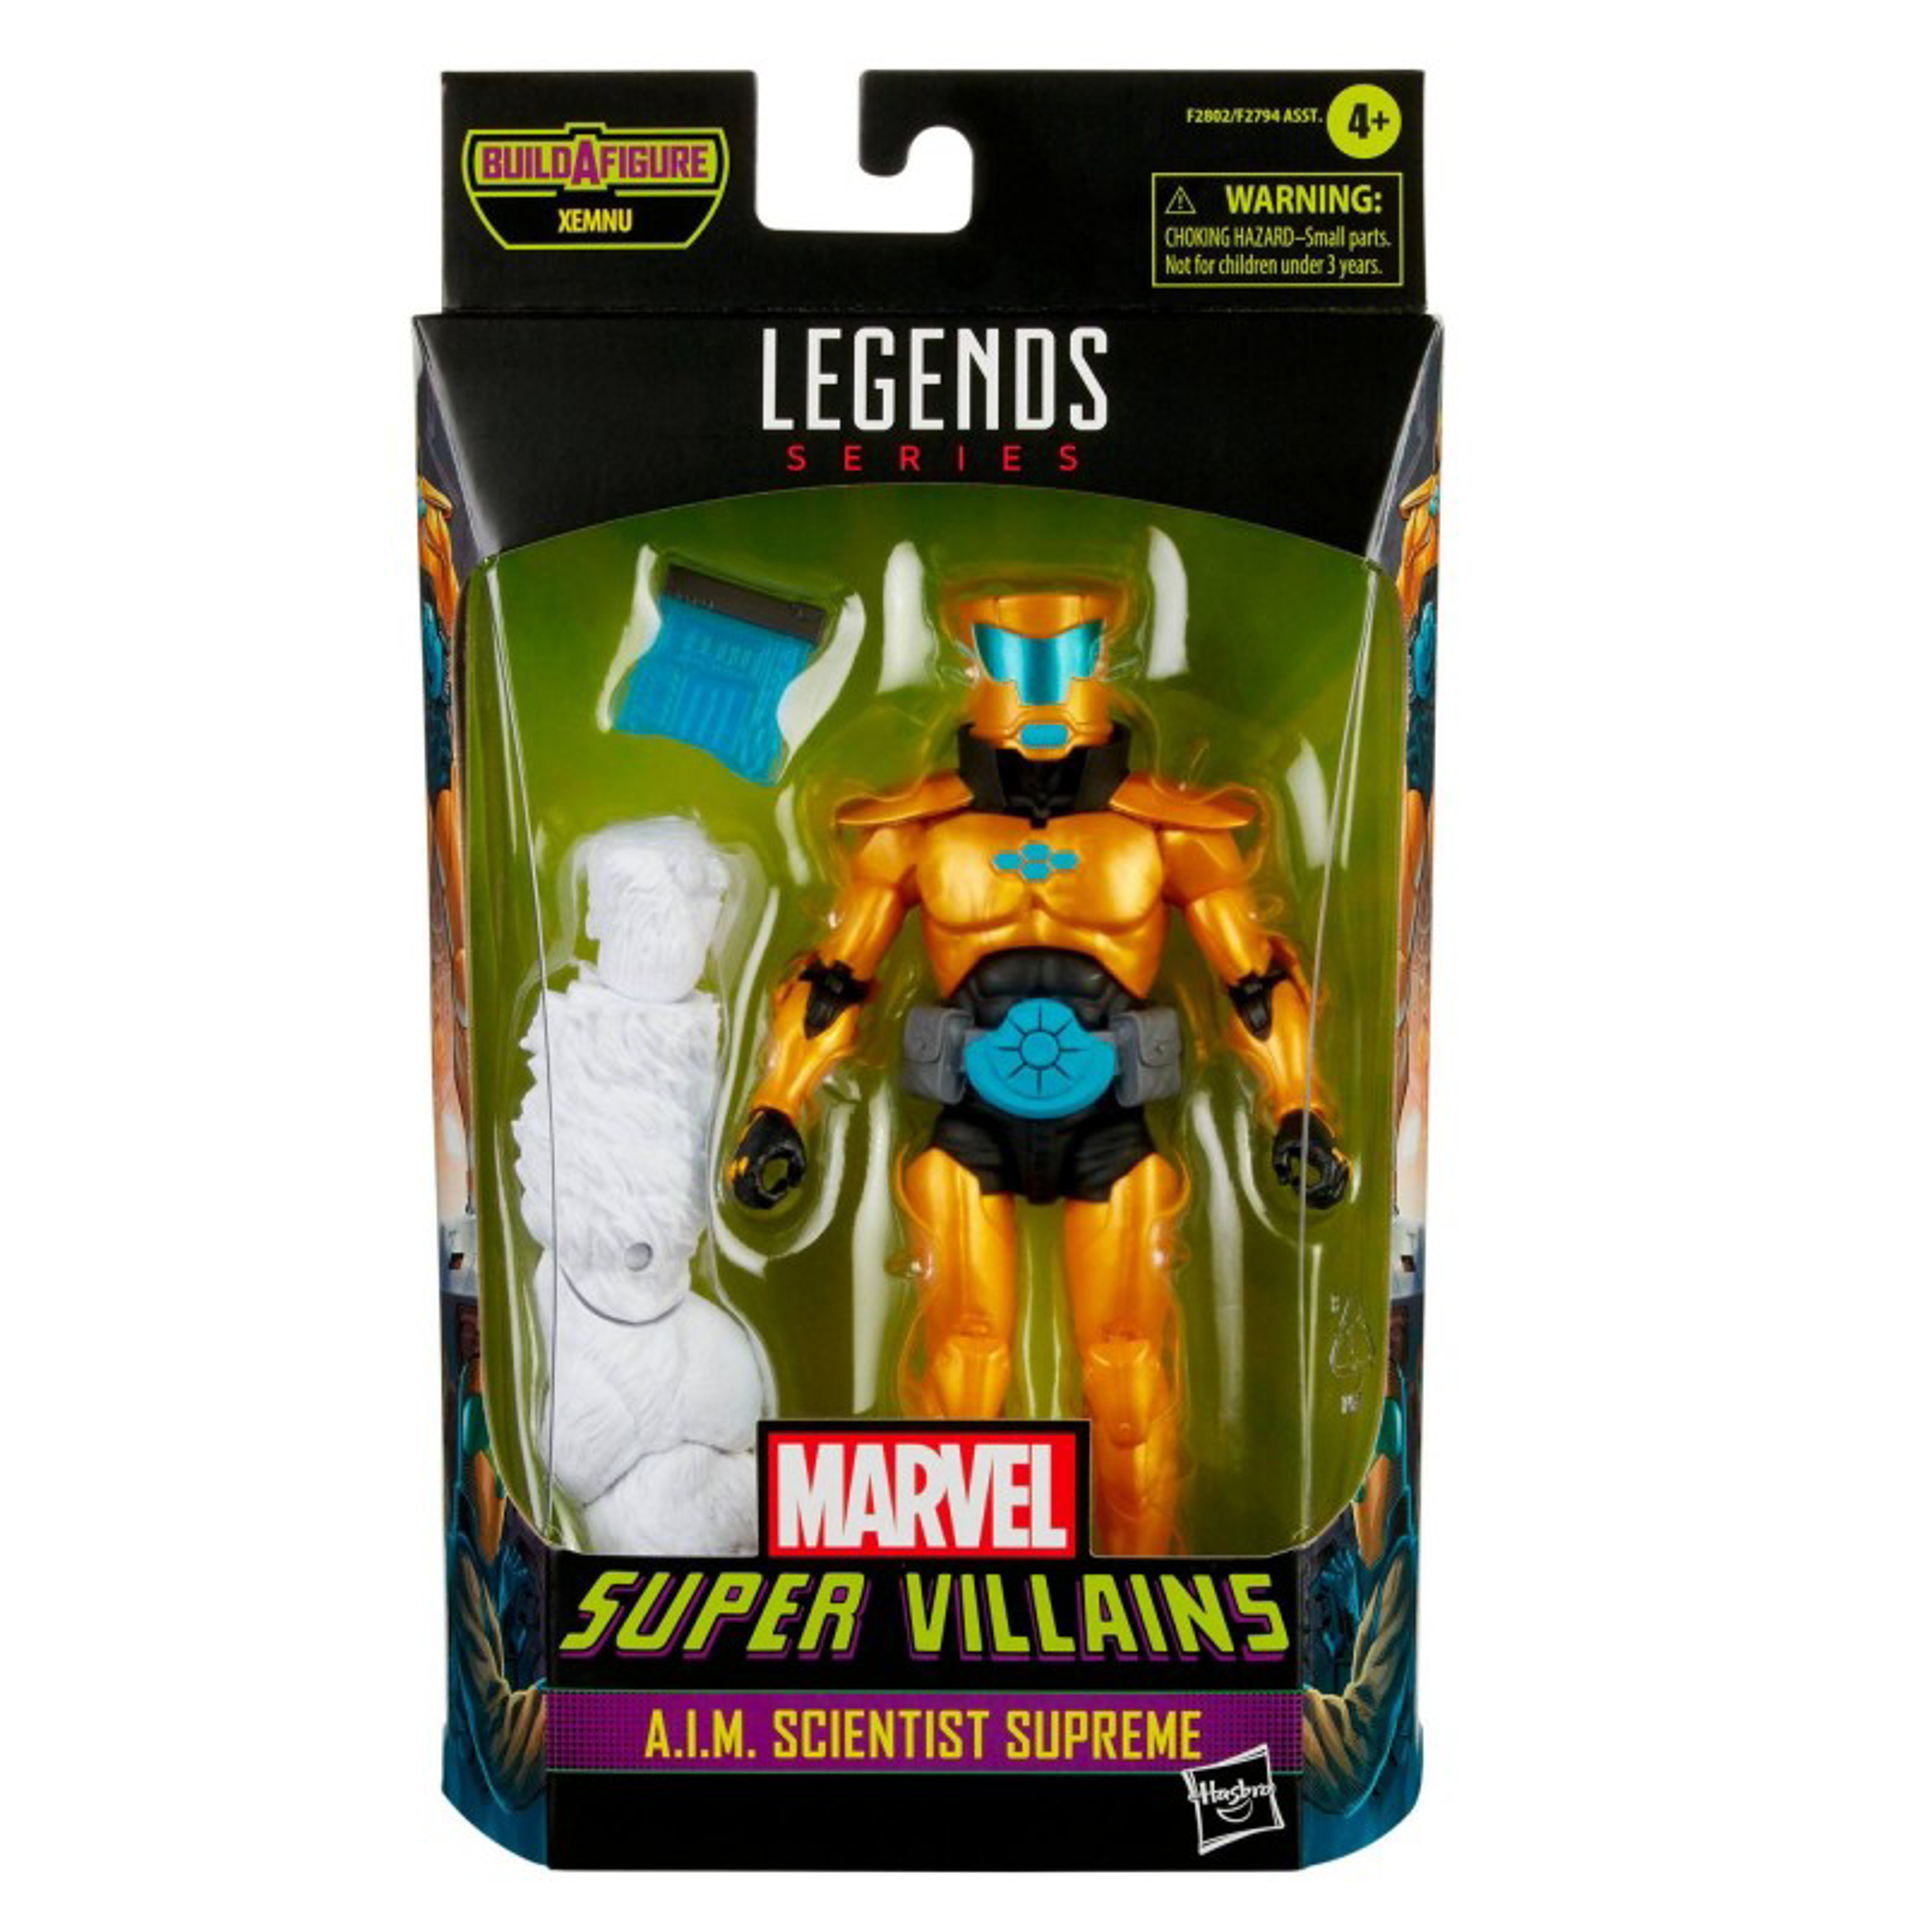 Marvel Legends Series - Build-A-Figure Série Xemnu - Marvel Super Villains Figurine d'action de A.I.M. Scientist Supreme 15cm